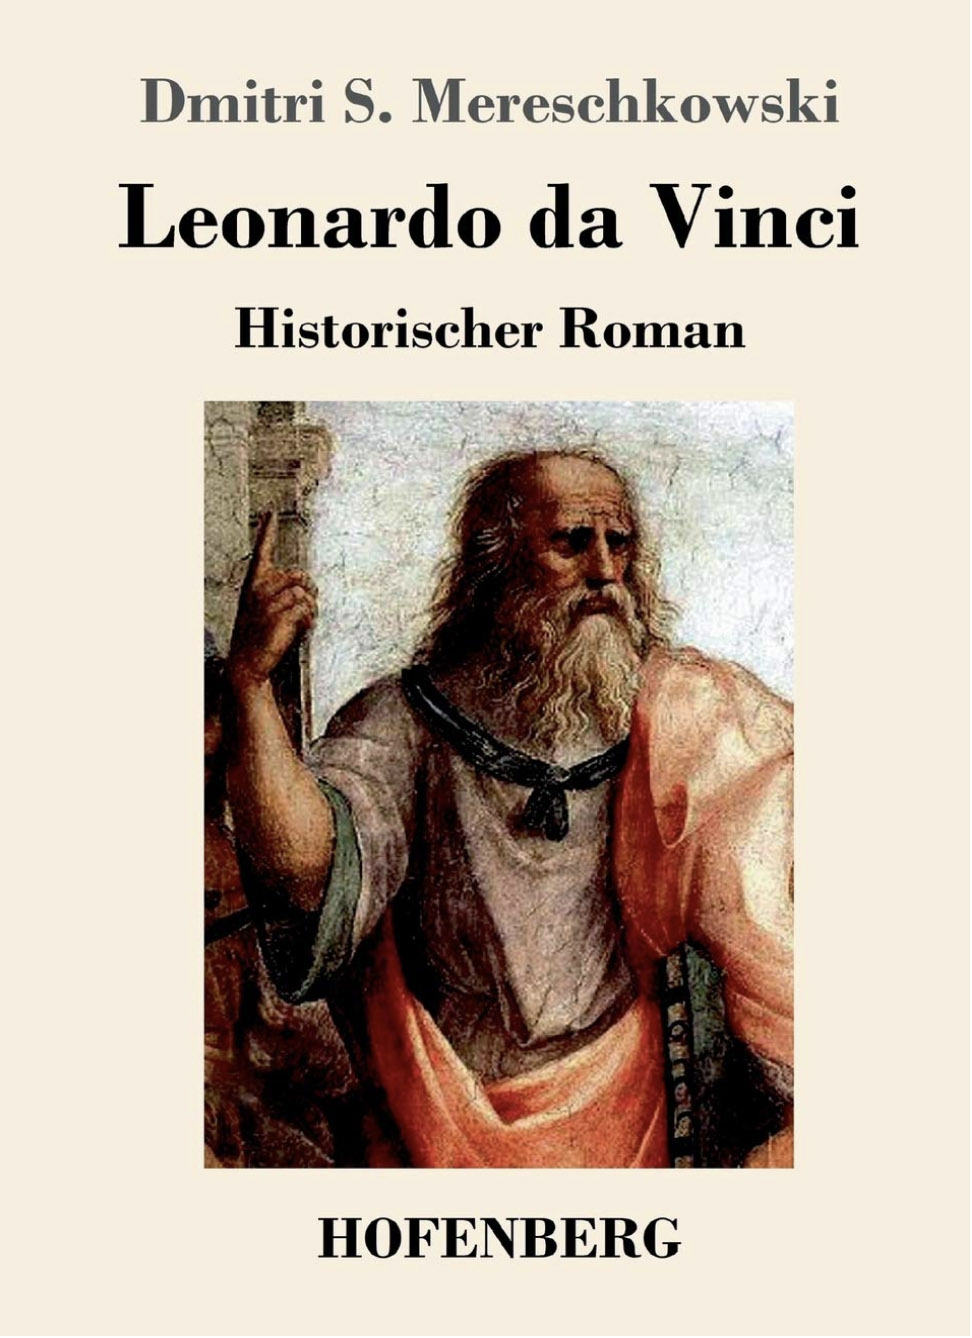 Dmitri Mereschkowski,, Mythos und Leben Leonardo da Vinci